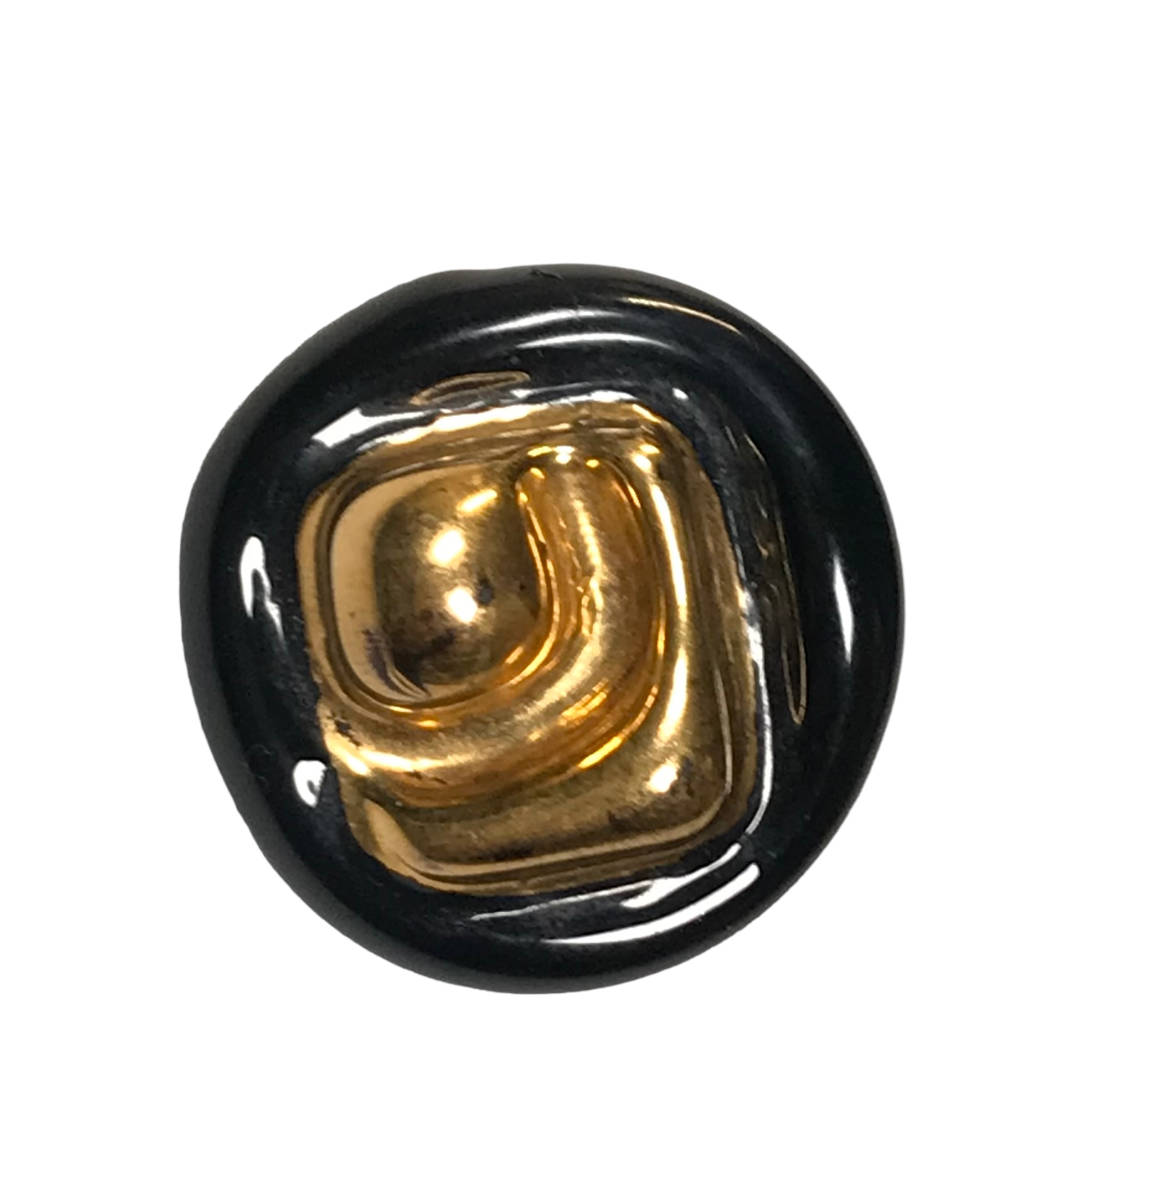 ※本物保証 ルーシー・リー Lucie Rie bimini ボタン 1940年代 絵柄 琥珀色 金彩 英国 オートクチュール ビミニ ガラスボタン デザイン